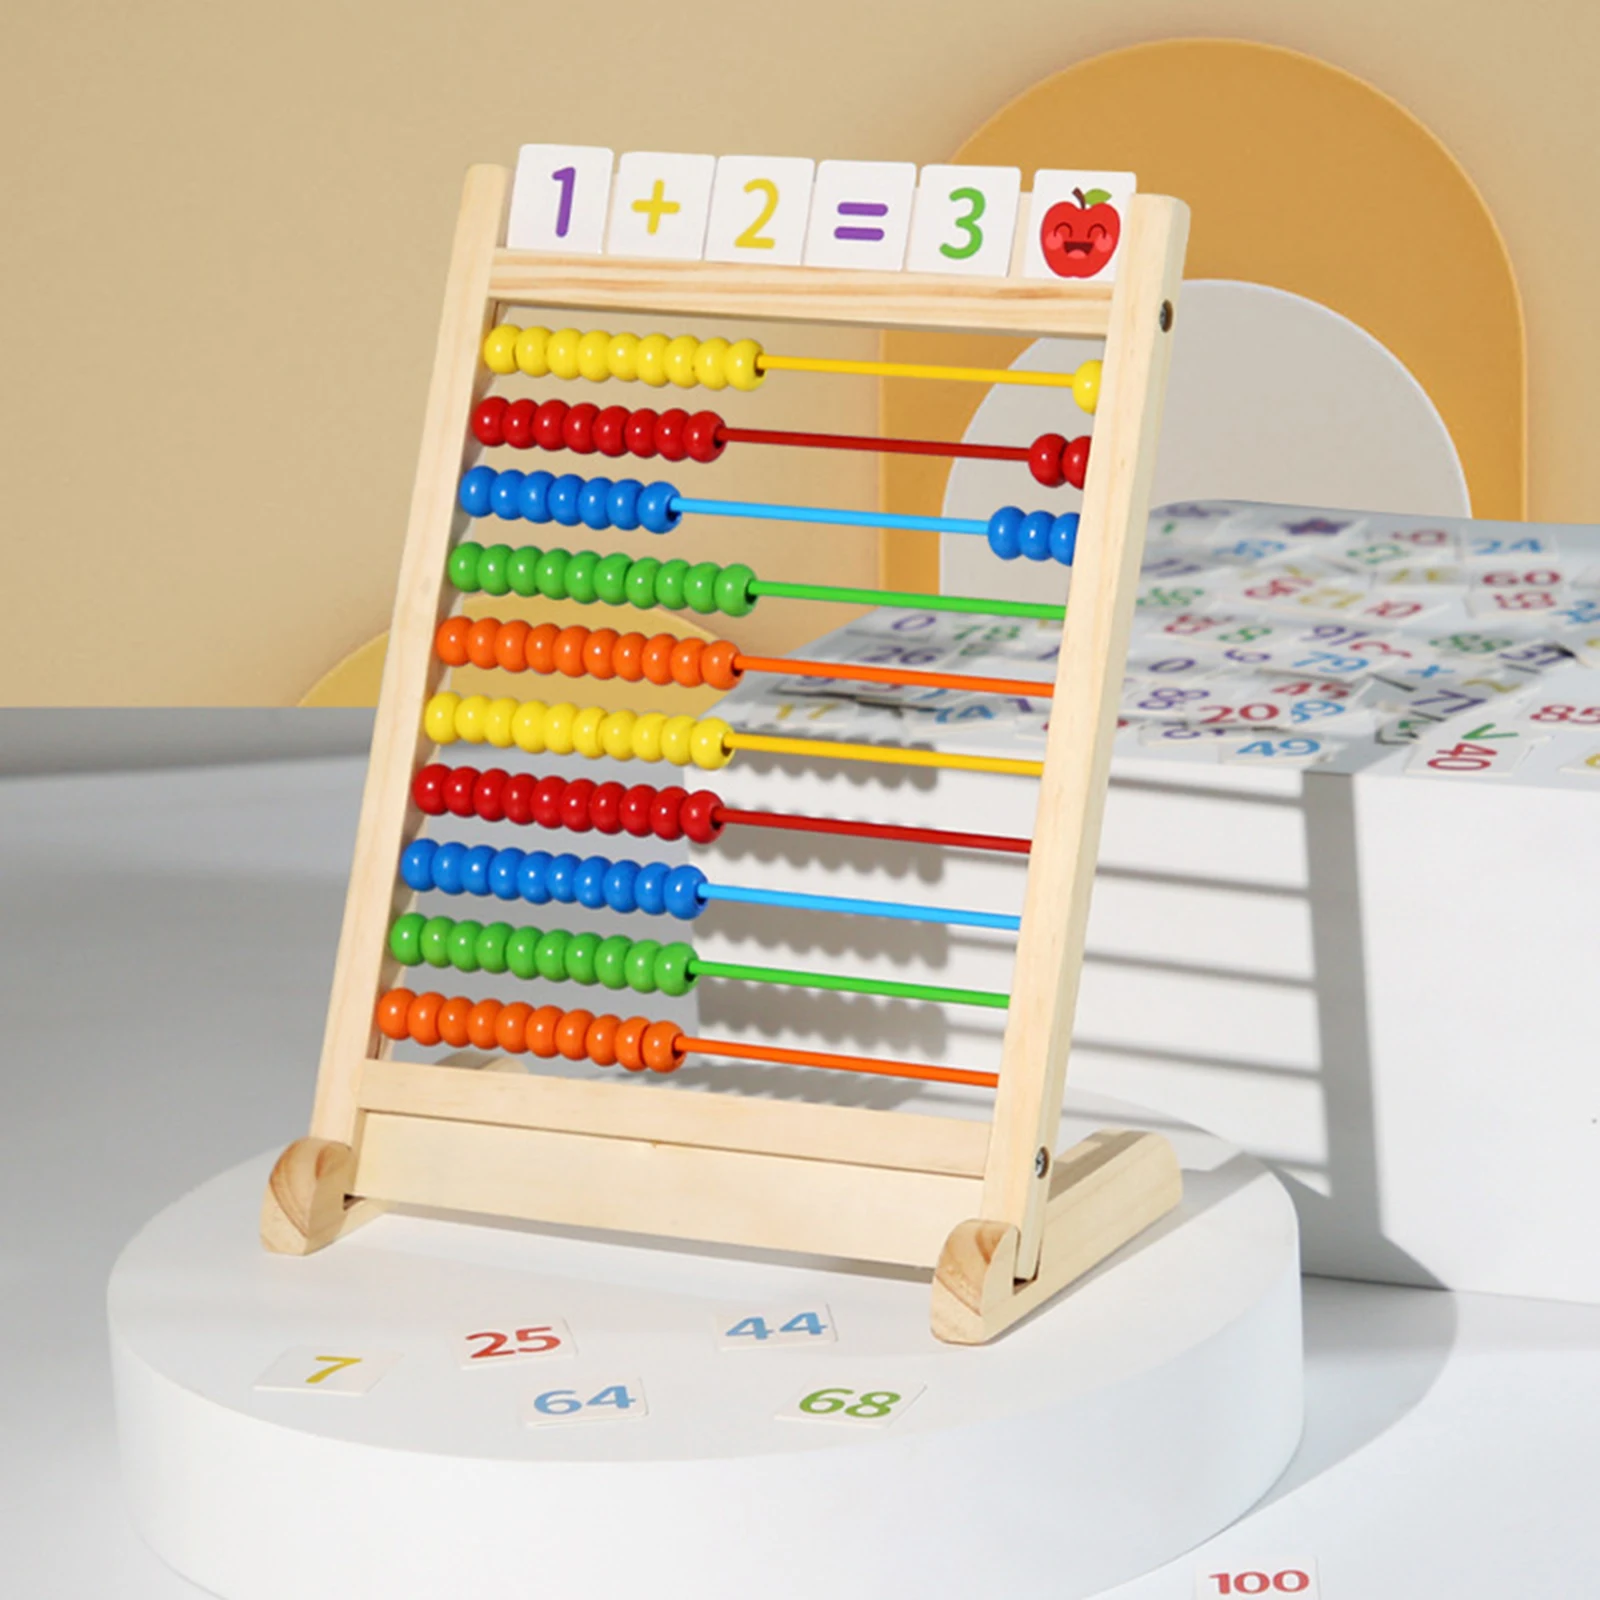 

Набор из десяти рамок для детей, математические счетчики для дошкольного возраста, развивающие счетные рамки с гладкими краями, игрушка